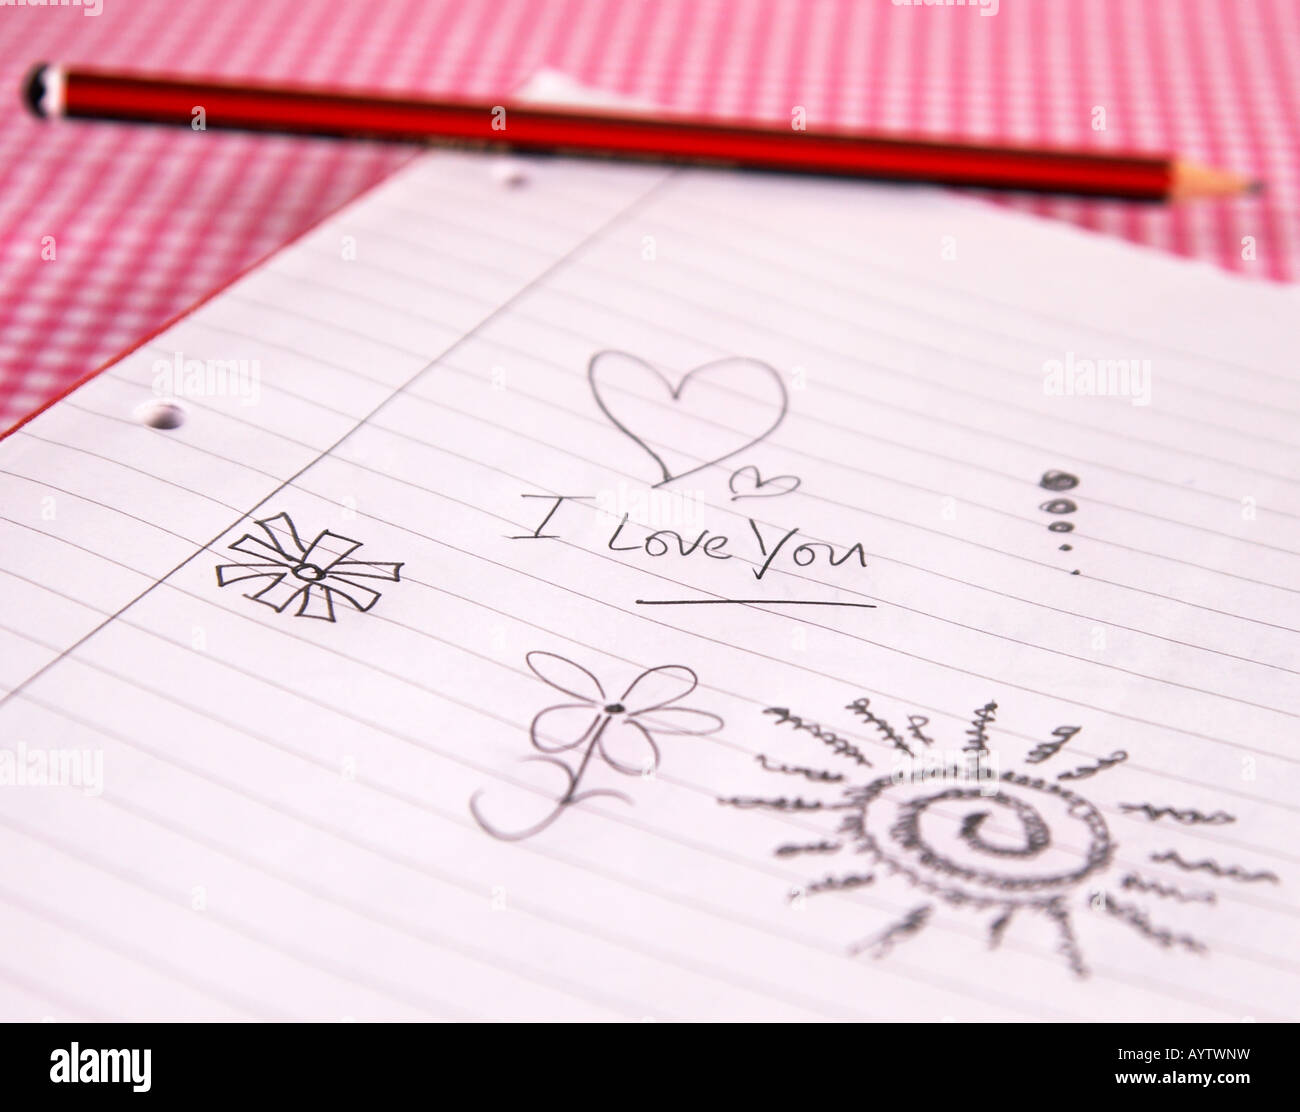 Ich liebe dich Doodle auf ein liniertes Pad mit Bleistift Stockfoto